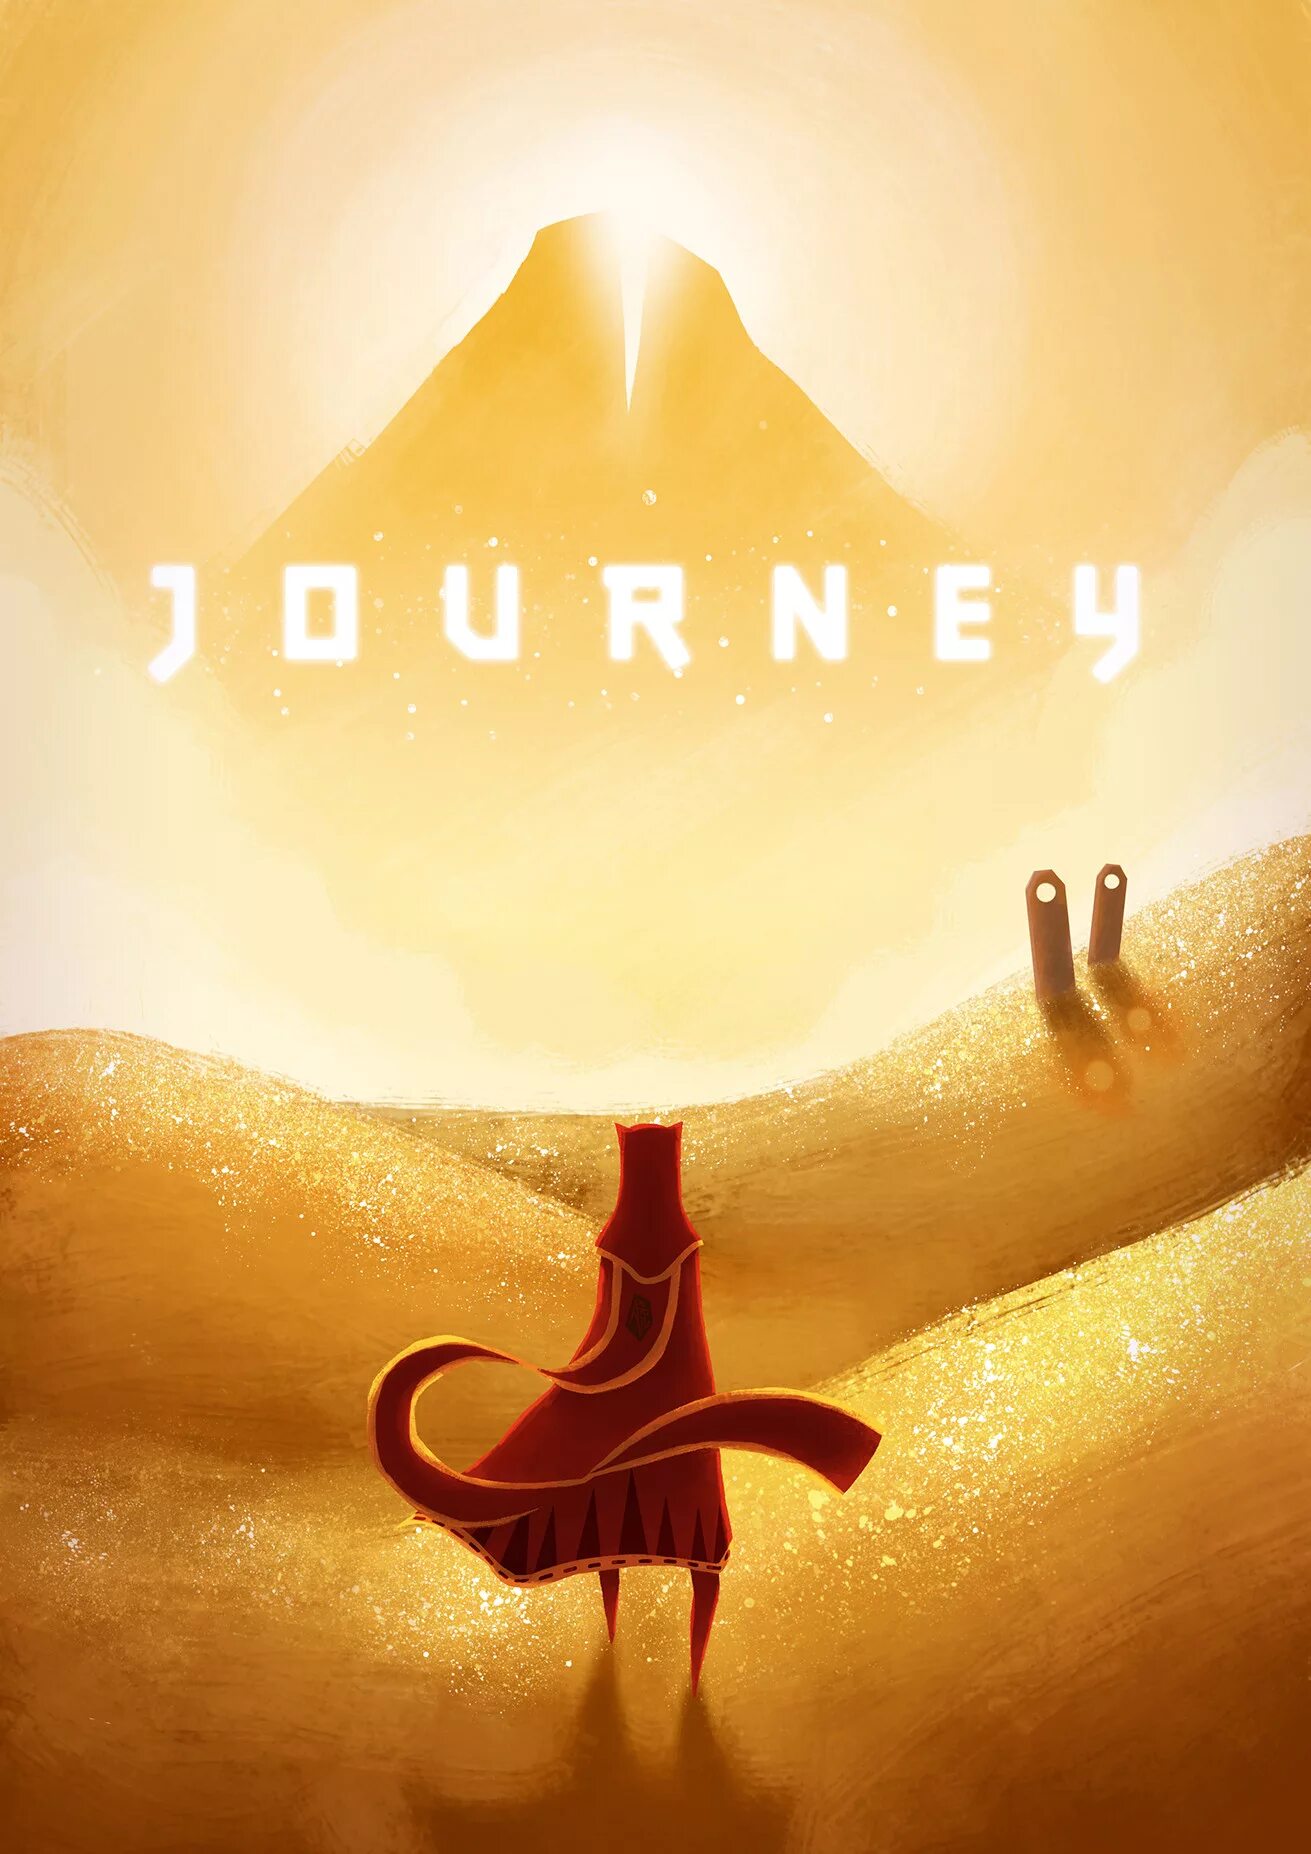 Journey (игра, 2012). Journey игра ps4. Джорни путешествие игра. Джорни Постер.